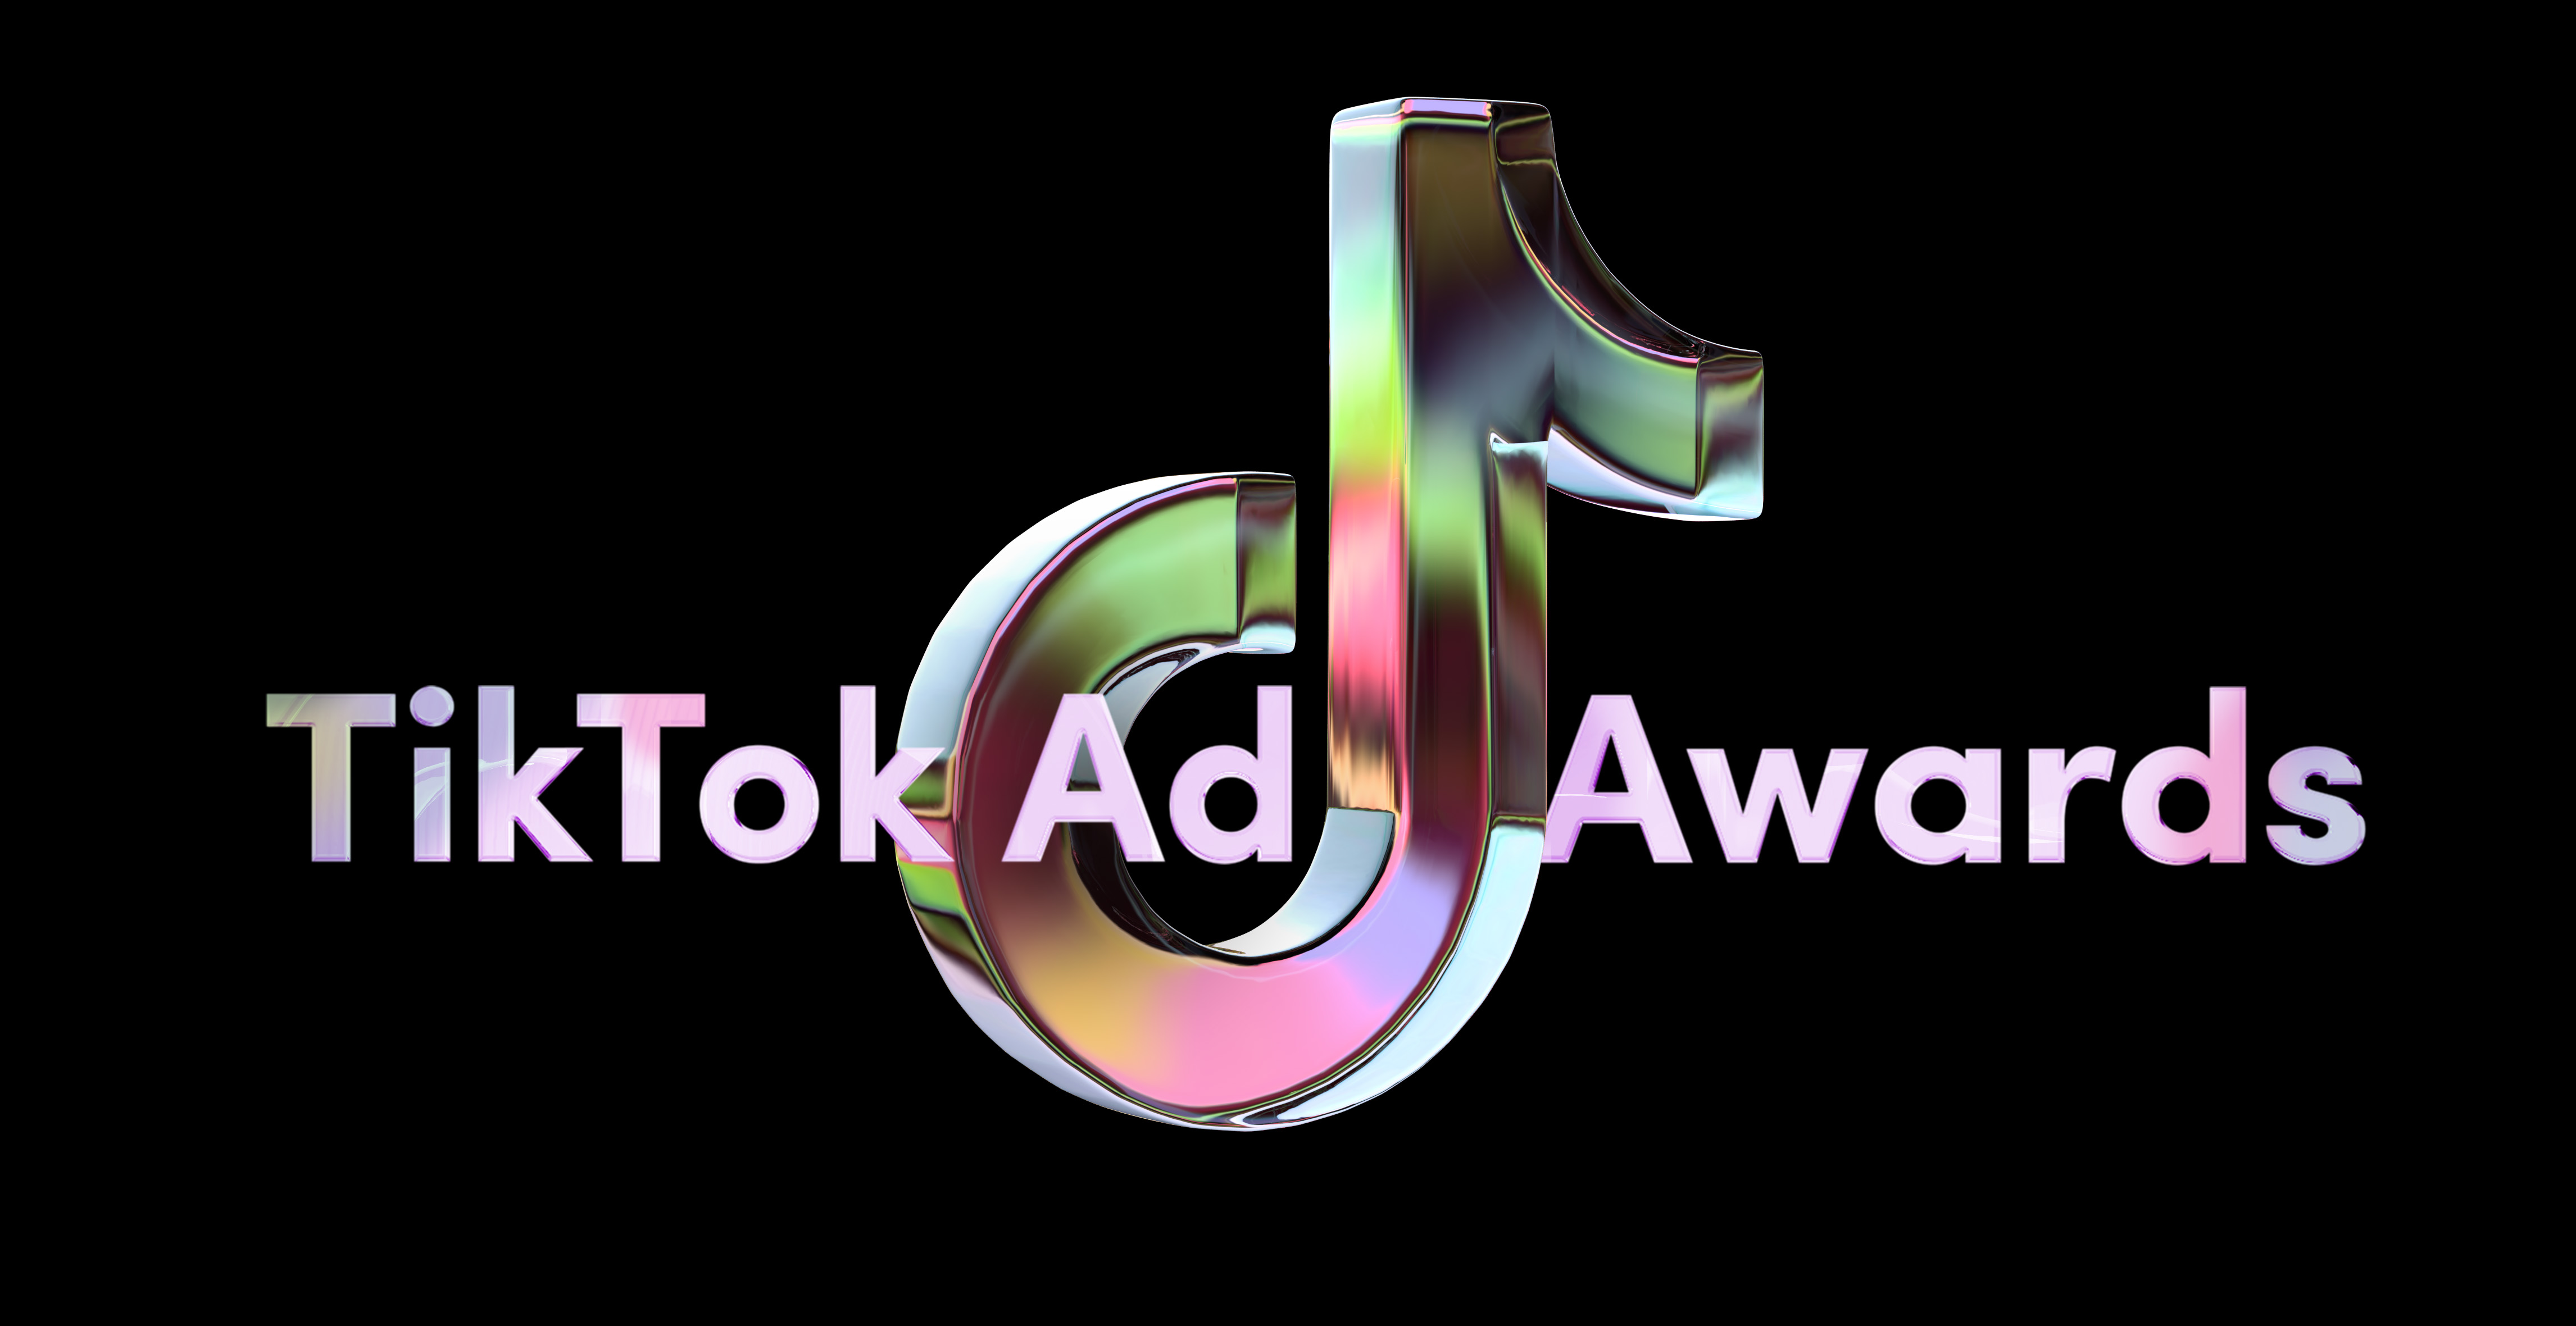 TikTok Ad Awards social